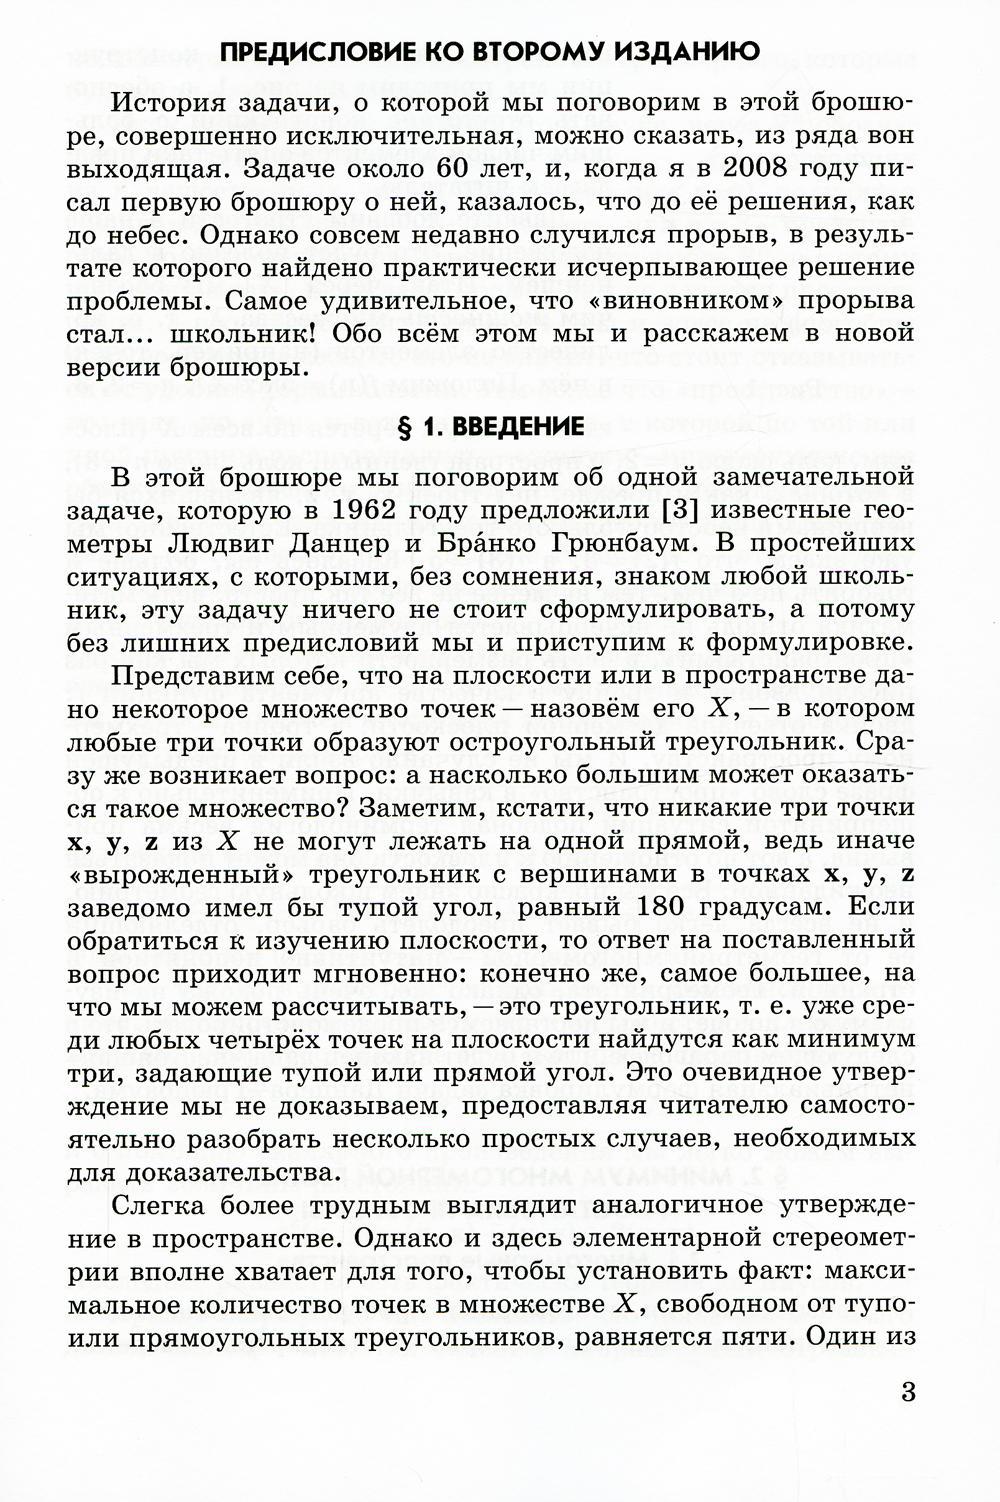 Остроугольные треугольники Данцера-Грюнбаума. 2-е изд., испр.и доп